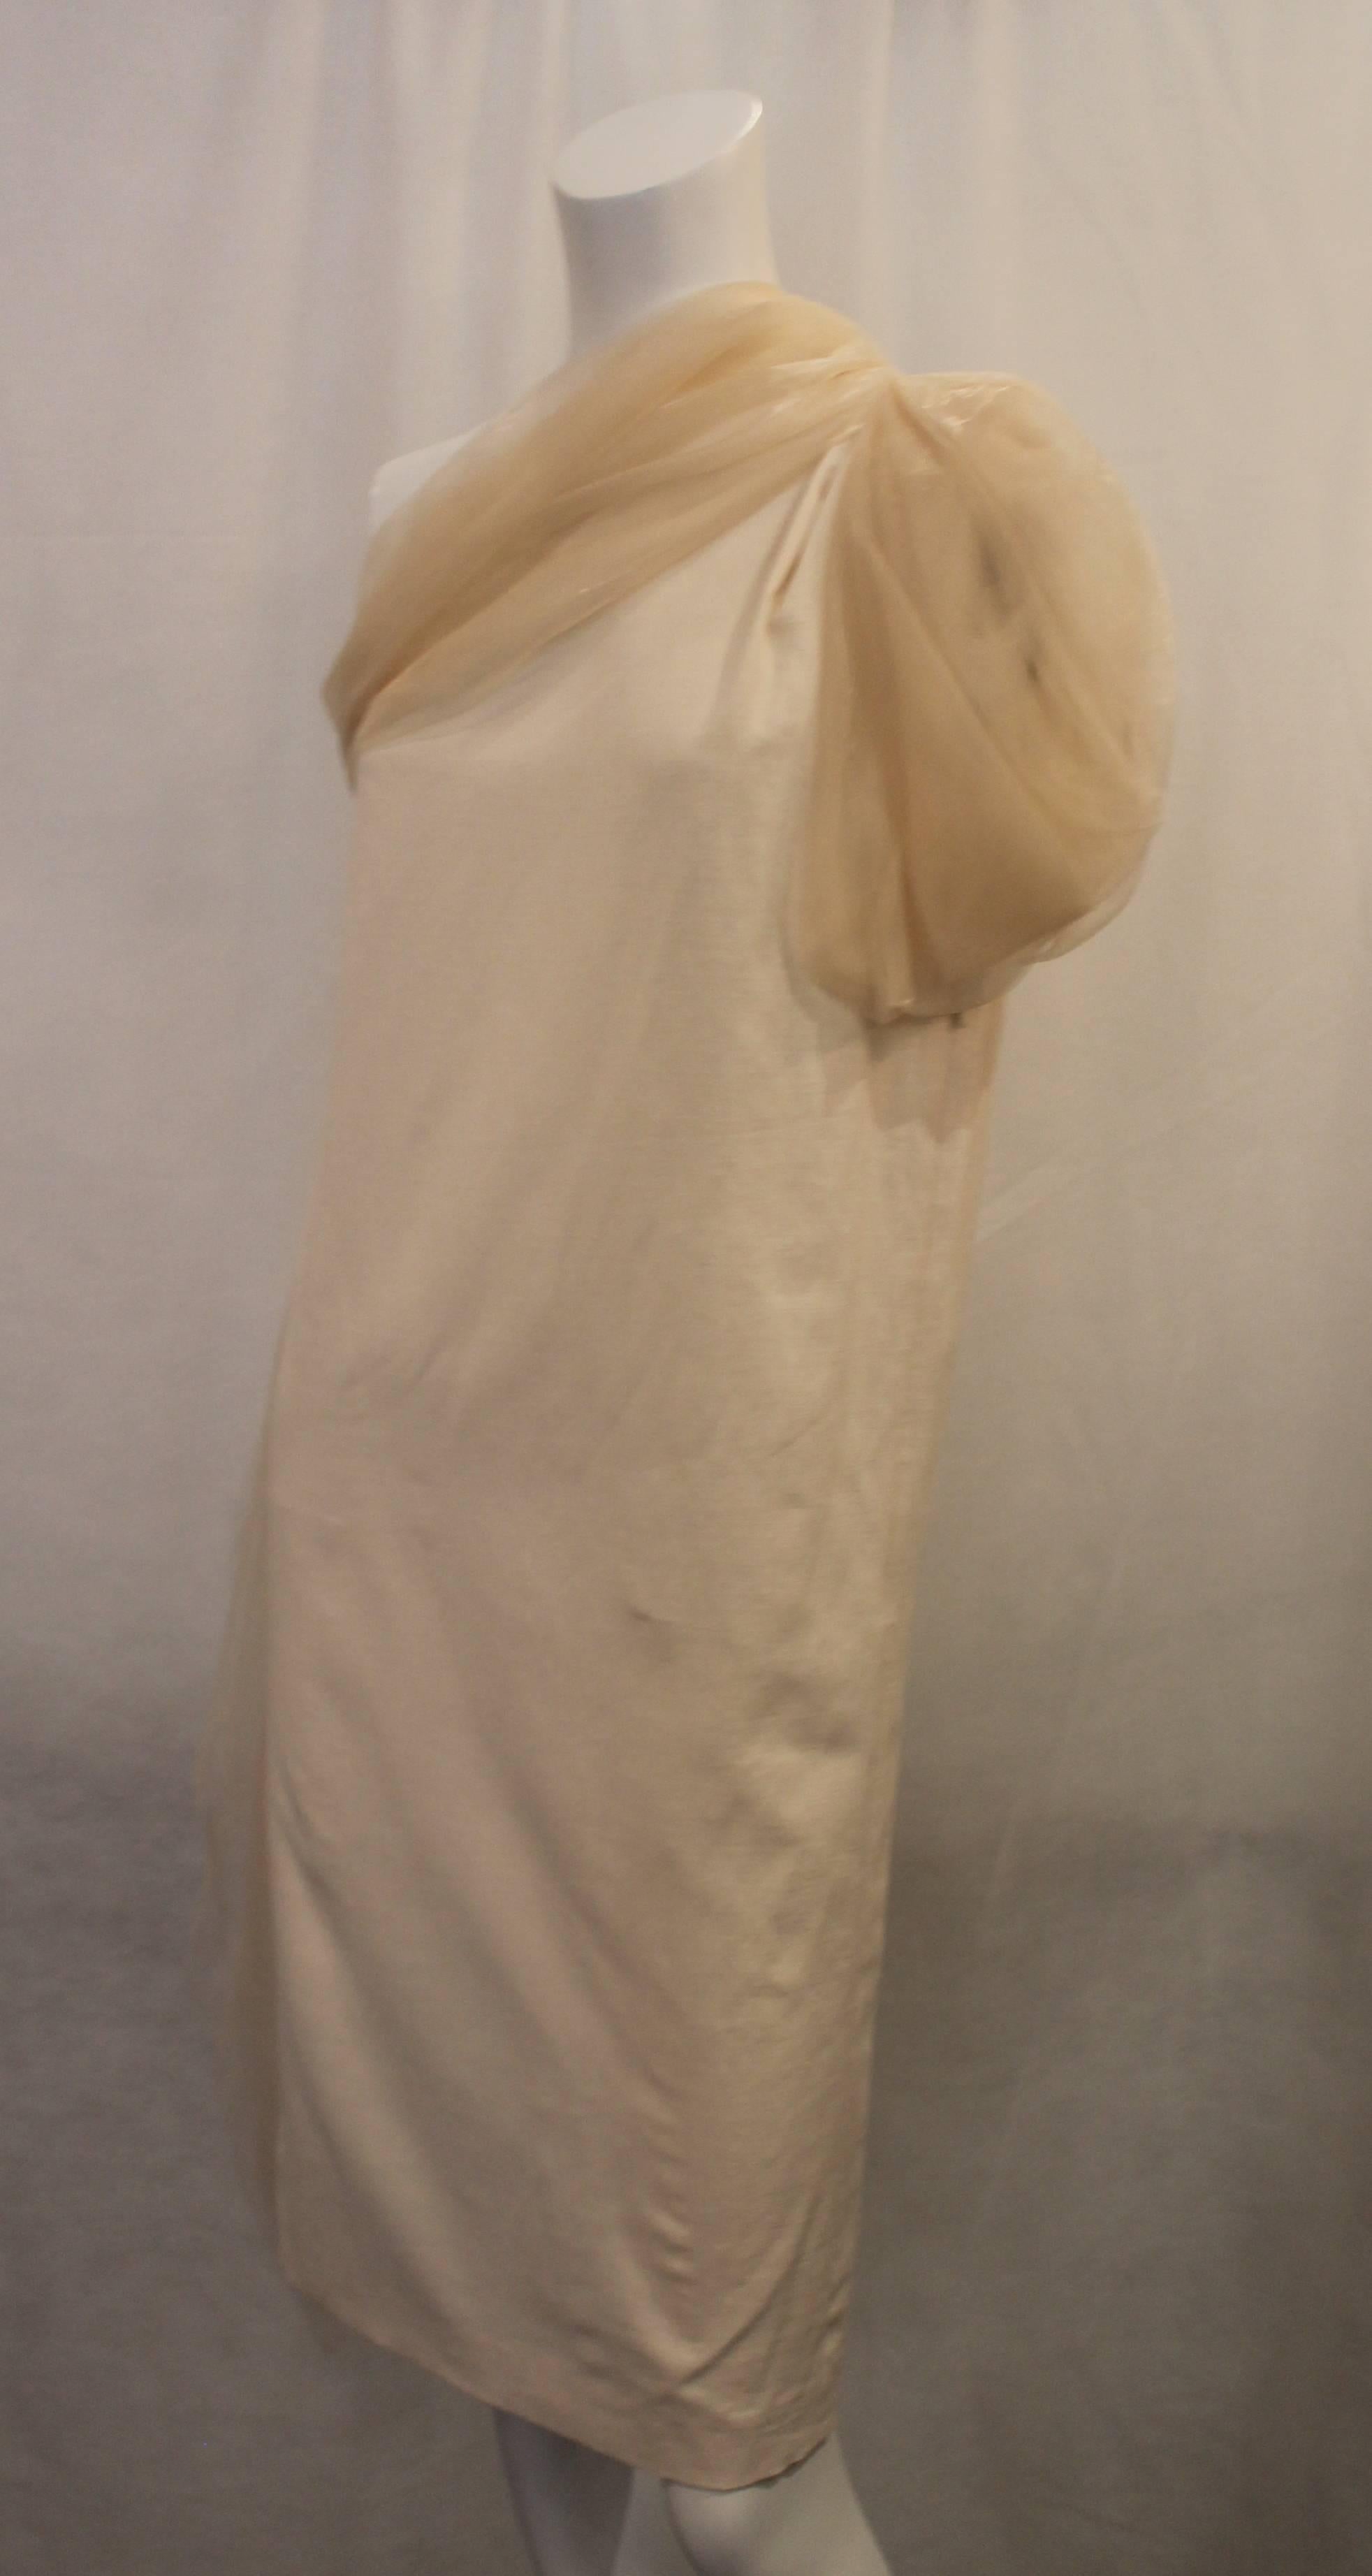 Bottega Veneta Cremefarbenes Leinen-One-Shoulder-Kleid mit Seidendetail - 40. Dieses elegante Kleid ist elfenbeinfarben und hat einen durchsichtigen cremefarbenen Schulterriemen und eine Schärpe. Dieses Kleid ist in ausgezeichnetem Zustand und ist